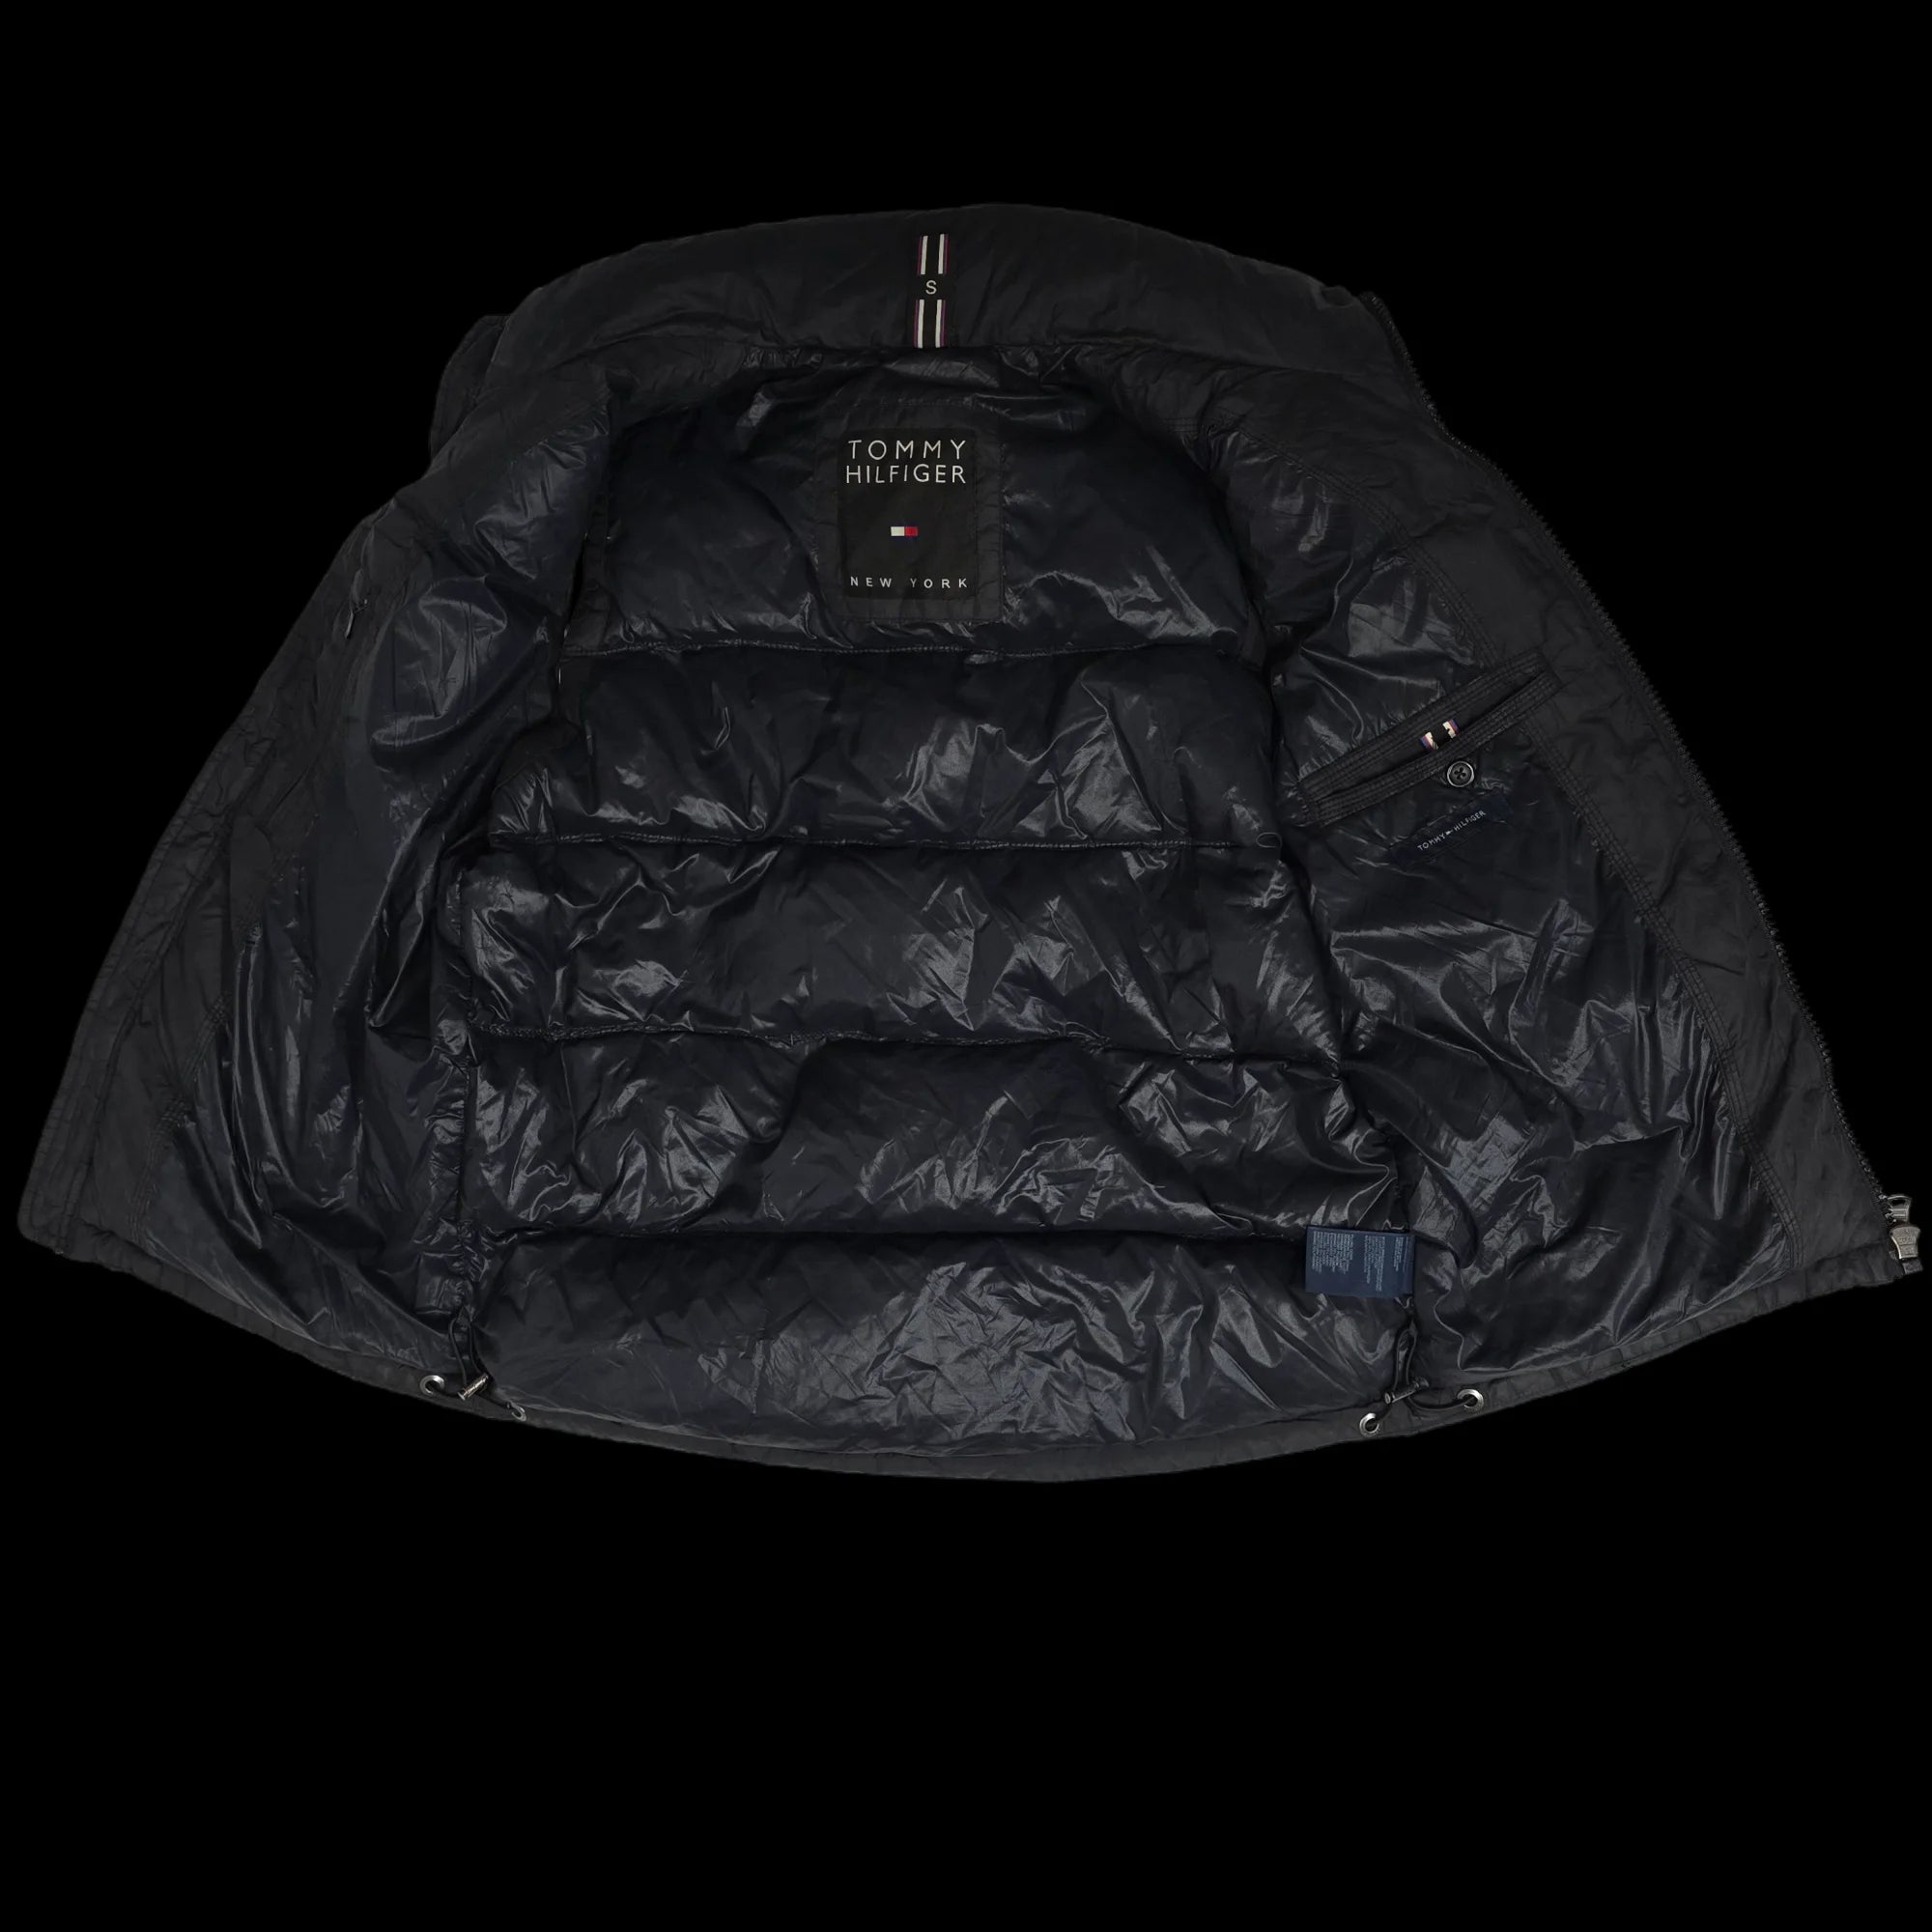 Unisex Tommy Hilfiger Black Gilet Jacket UK Small - 5 - 3464